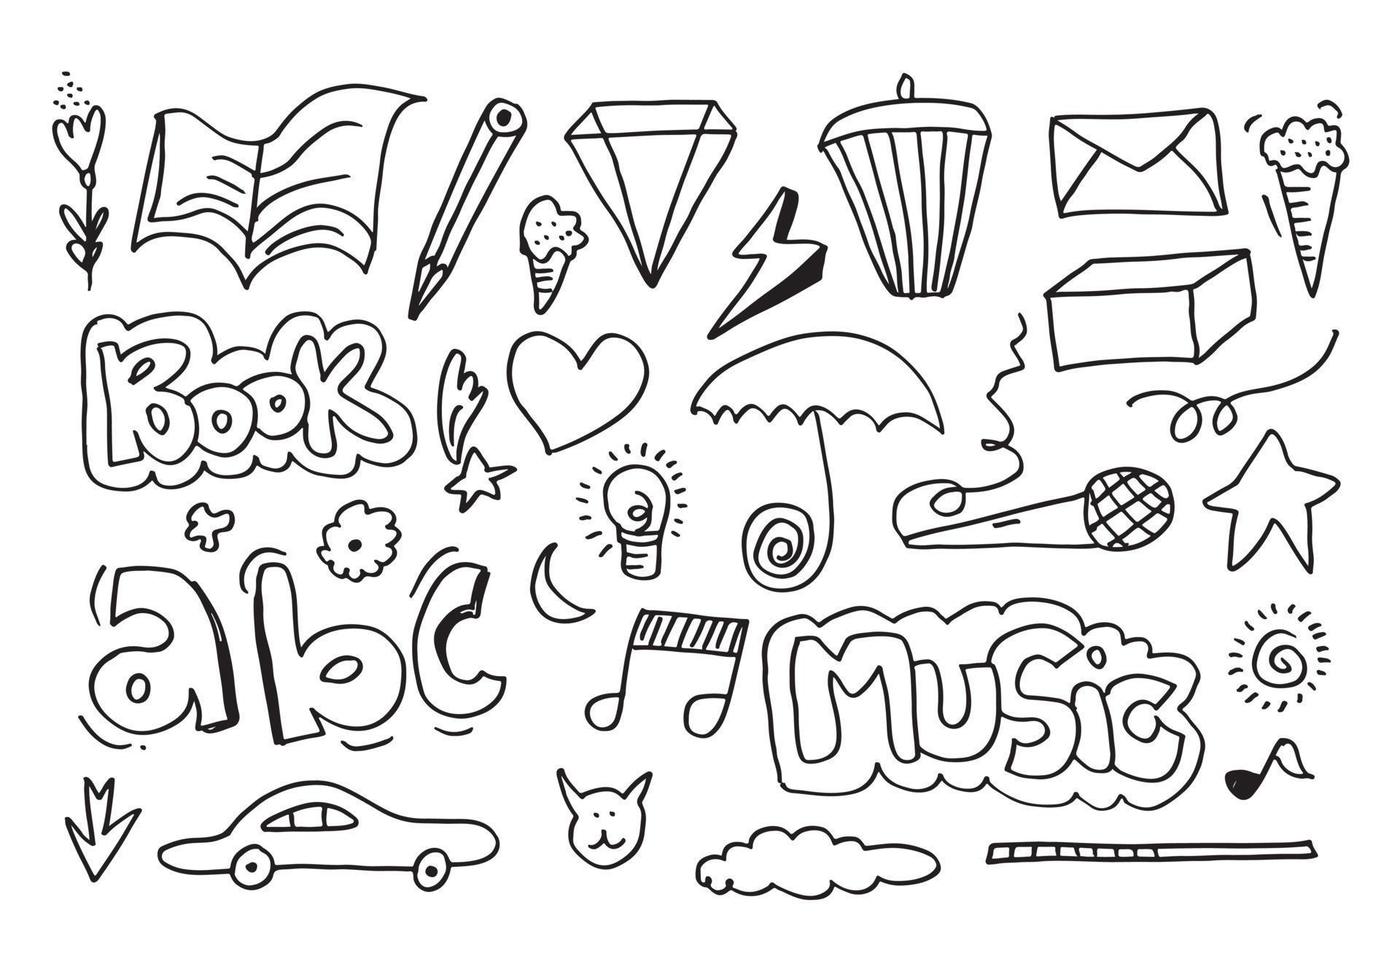 ensemble d'éléments de conception de doodle isolés sur fond blanc pour des concepts de conception comme les fleurs, la musique, la voiture, le livre, la foudre, le cœur et autres. vecteur